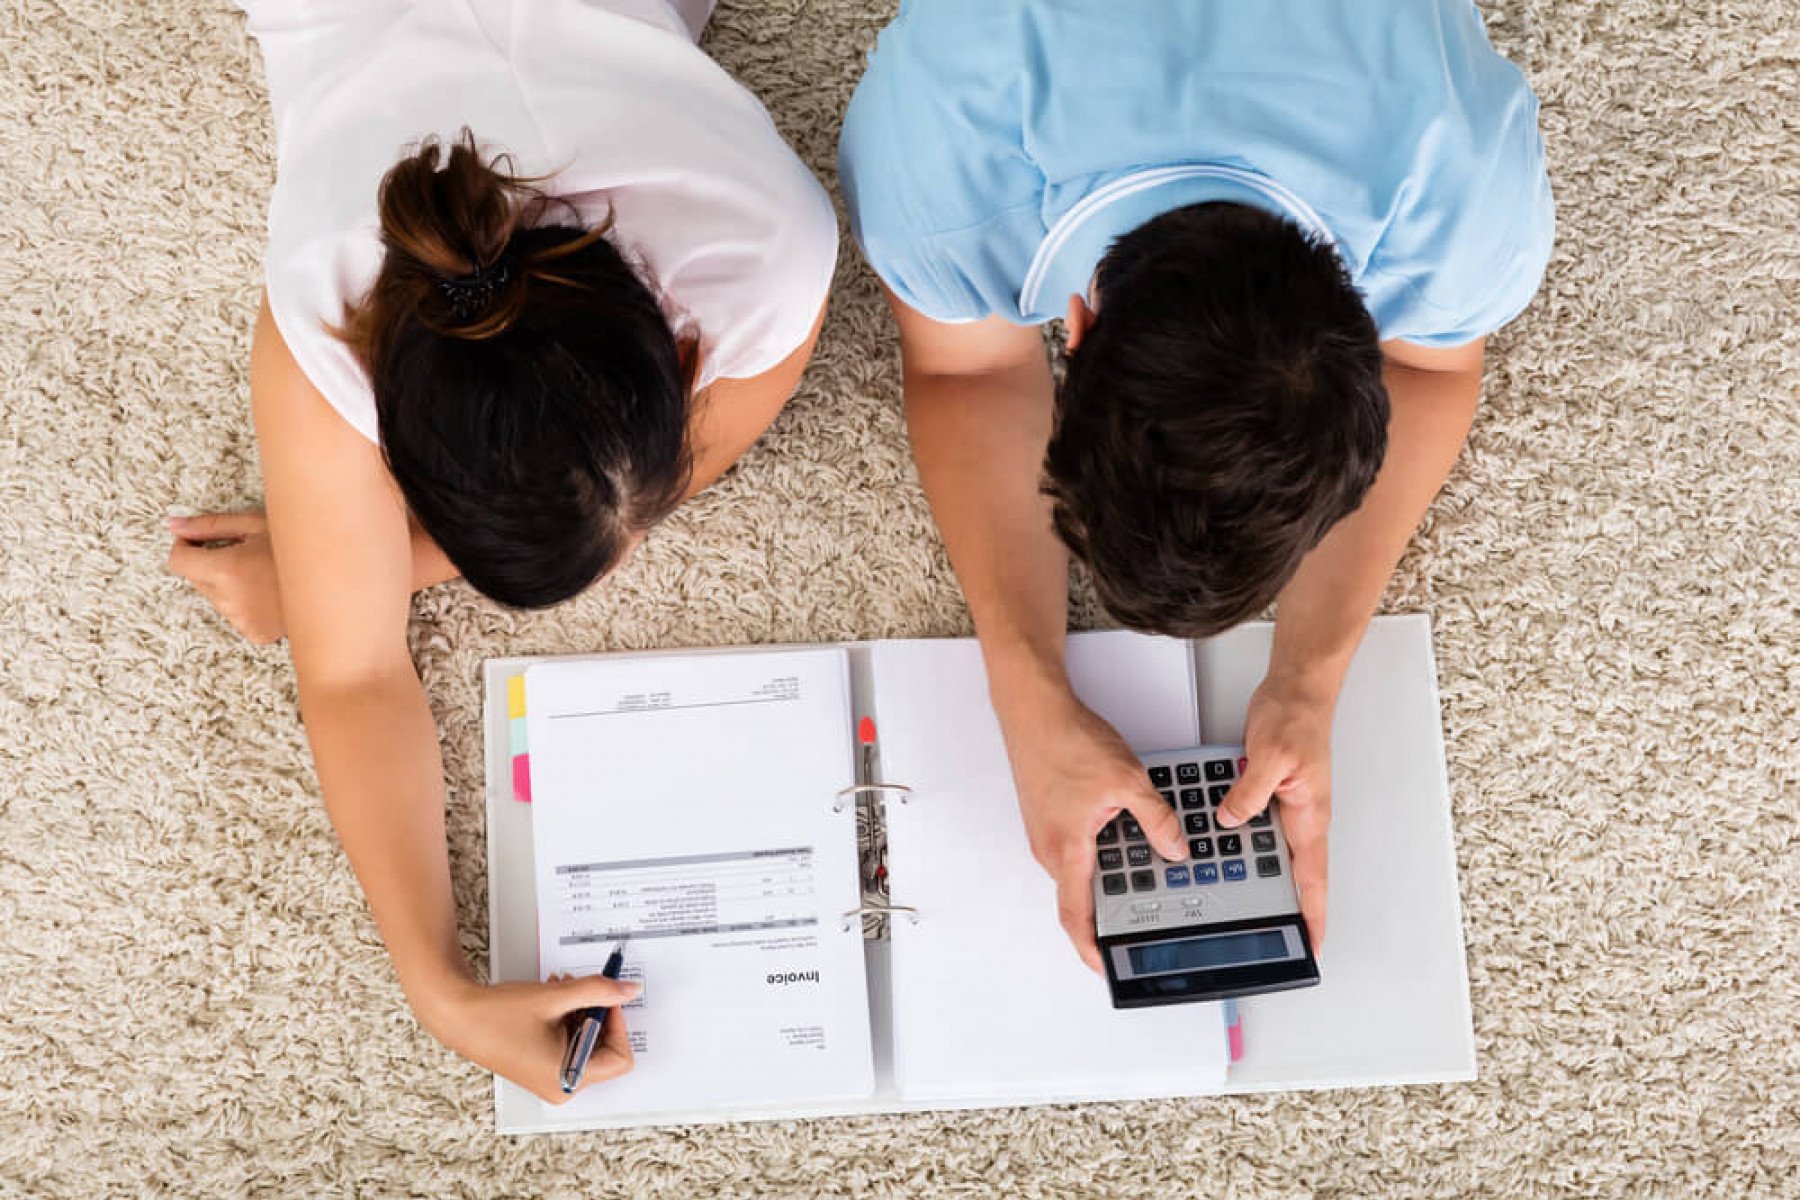 Två personer ligger ned på en matta med fakturor och en miniräknare